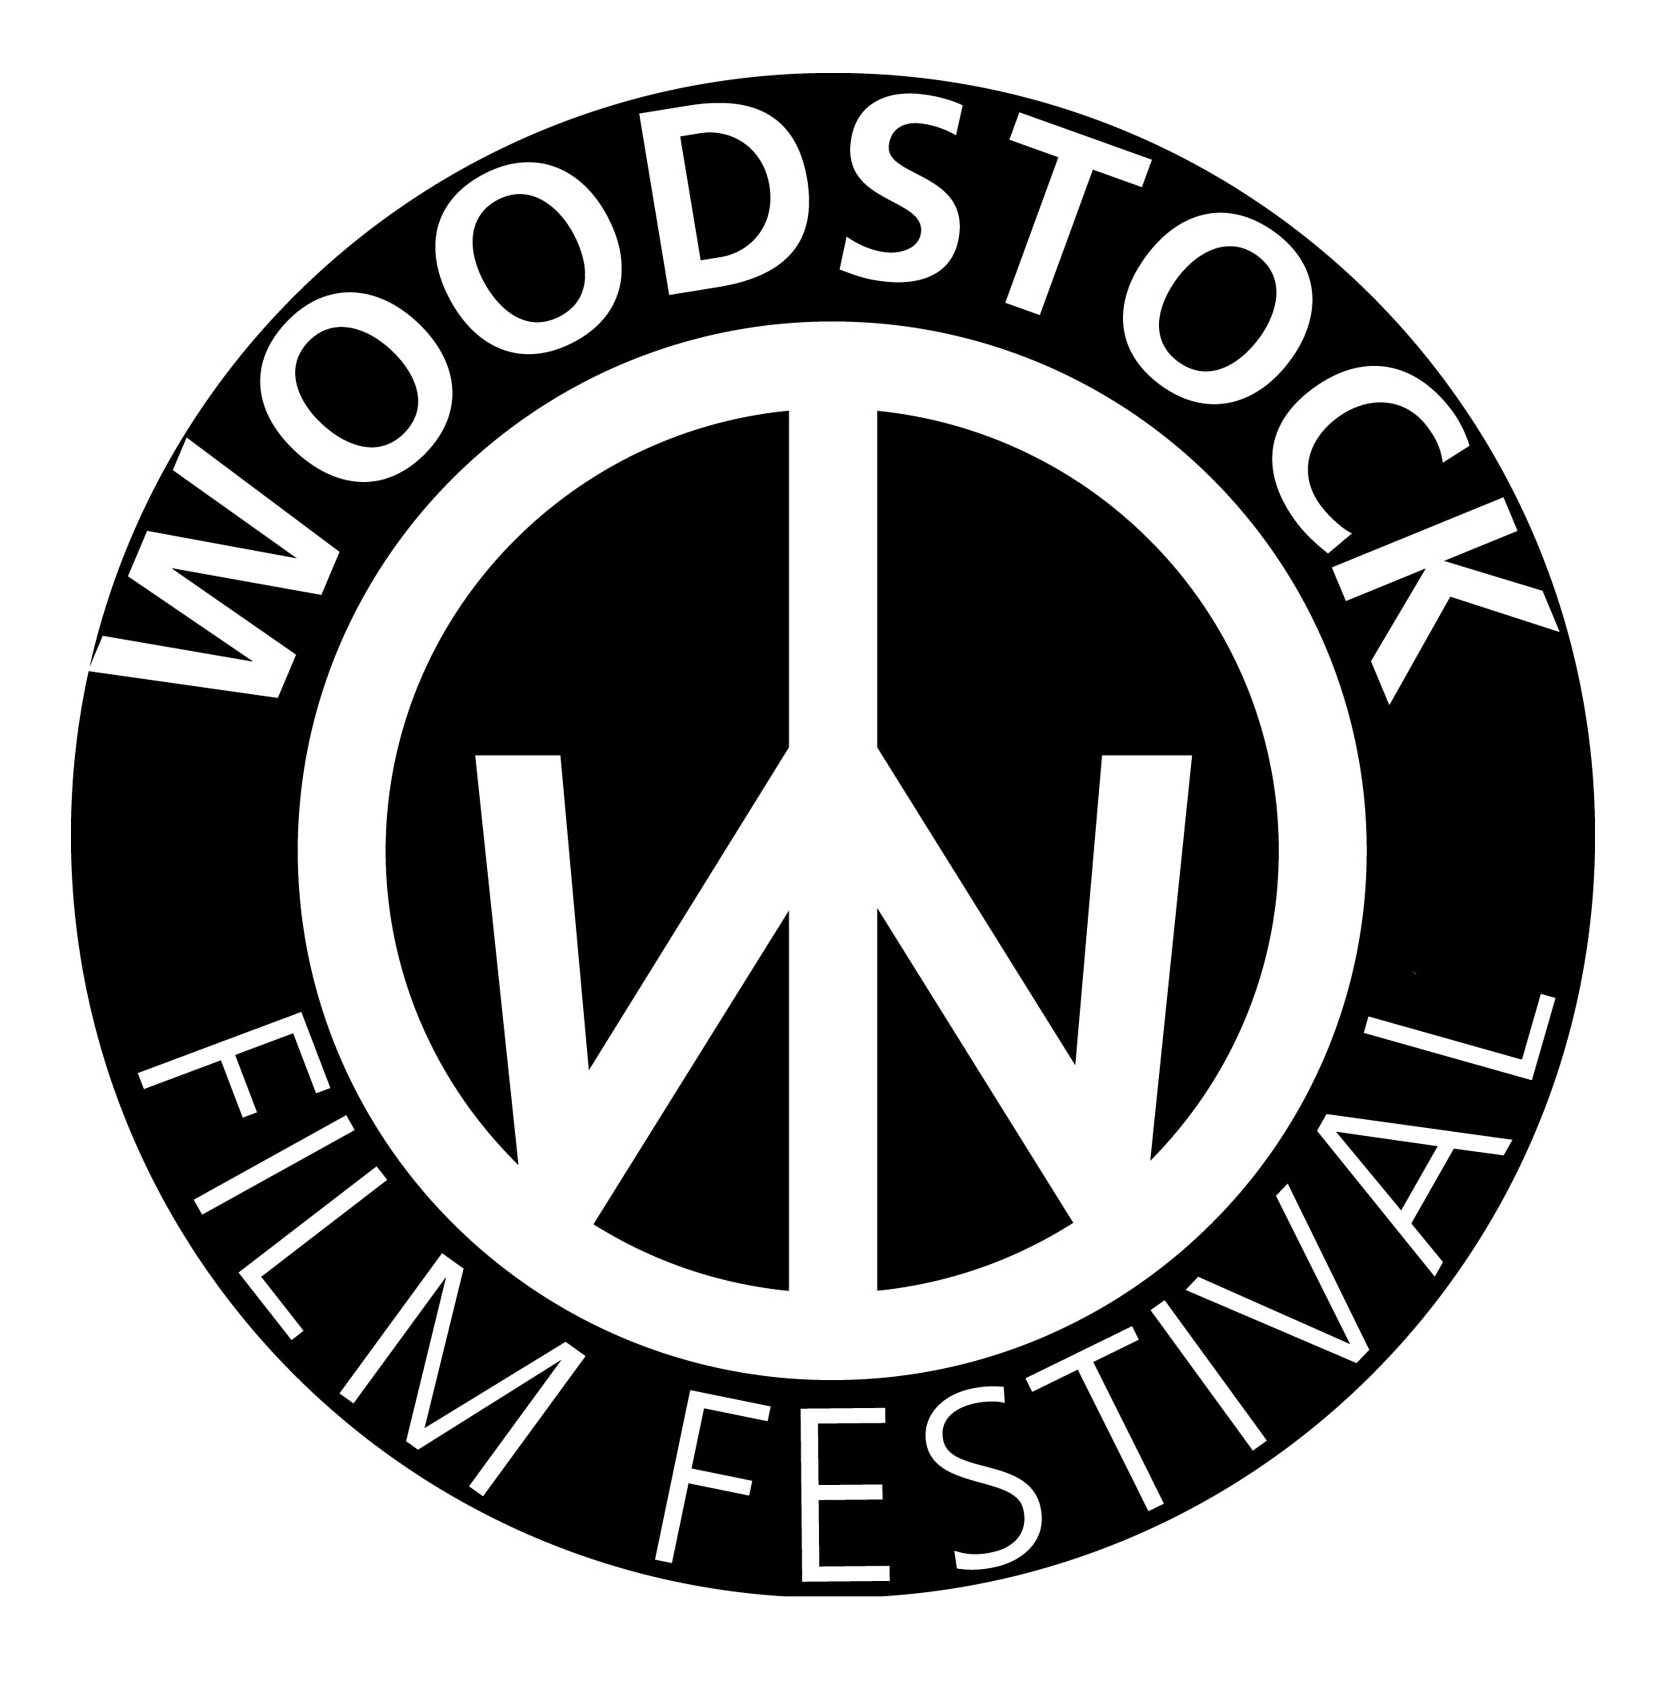 woodstock film festival